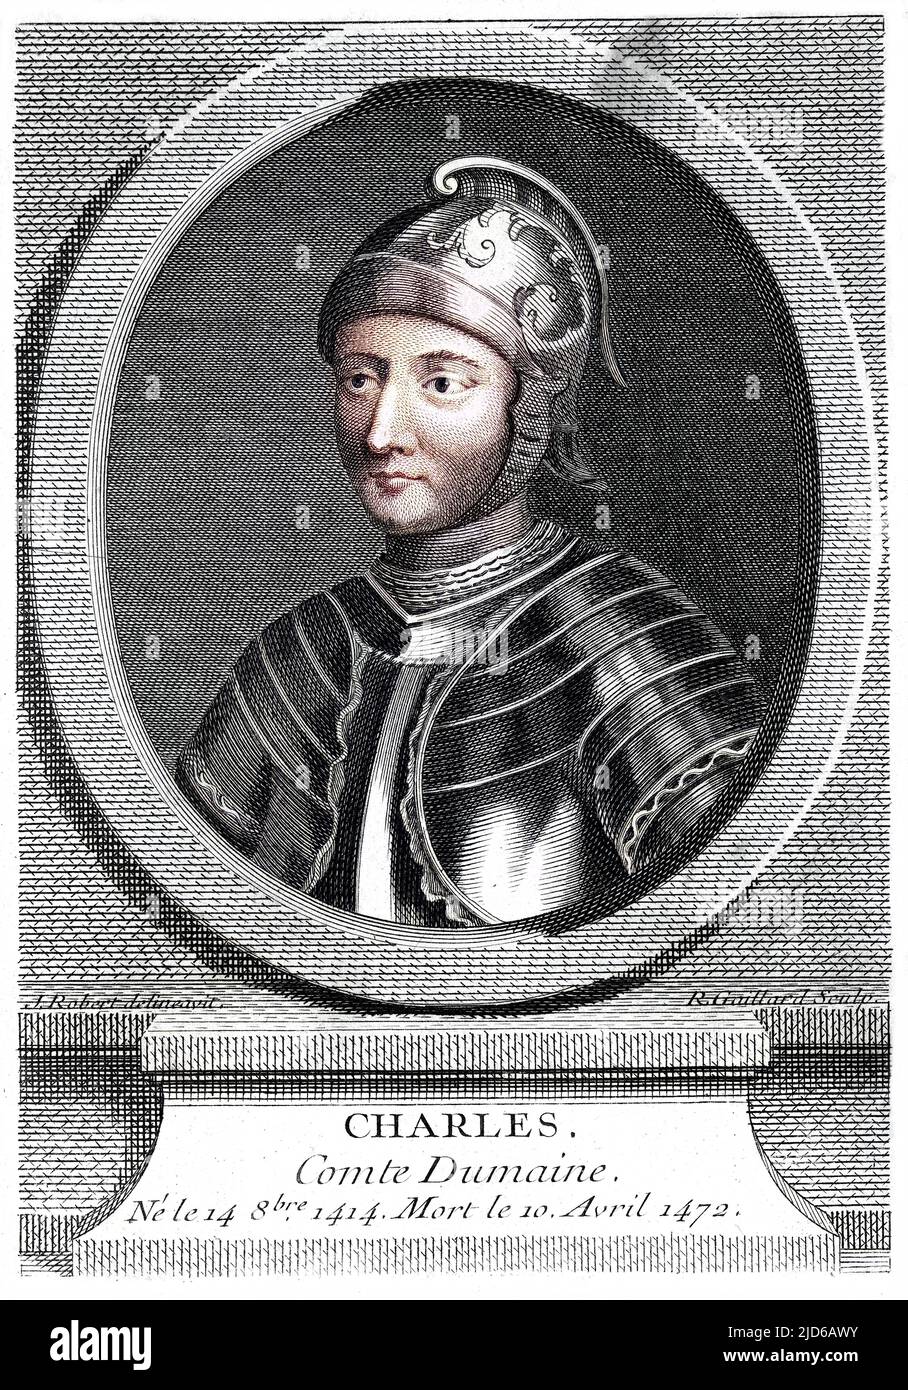 CHARLES comte du MAINE Französischer Soldat und Staatsmann Colorized Version of : 10164139 Datum: 1414 - 1472 Stockfoto